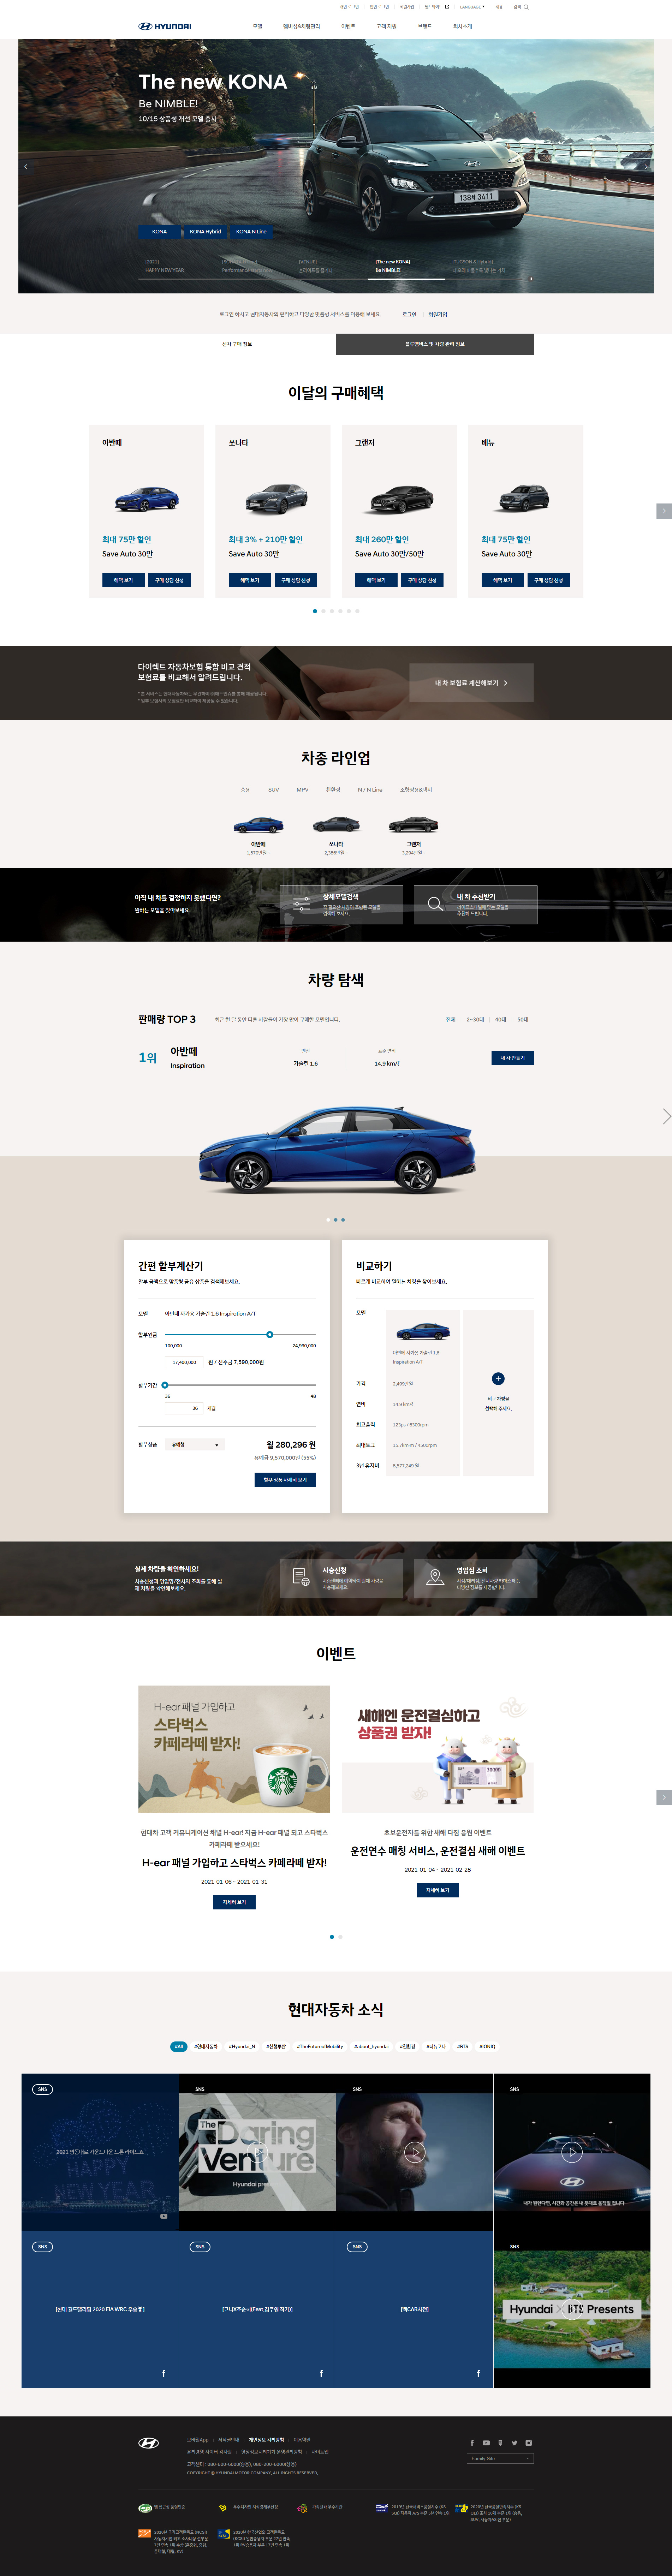 现代汽车(韩语)网站设计